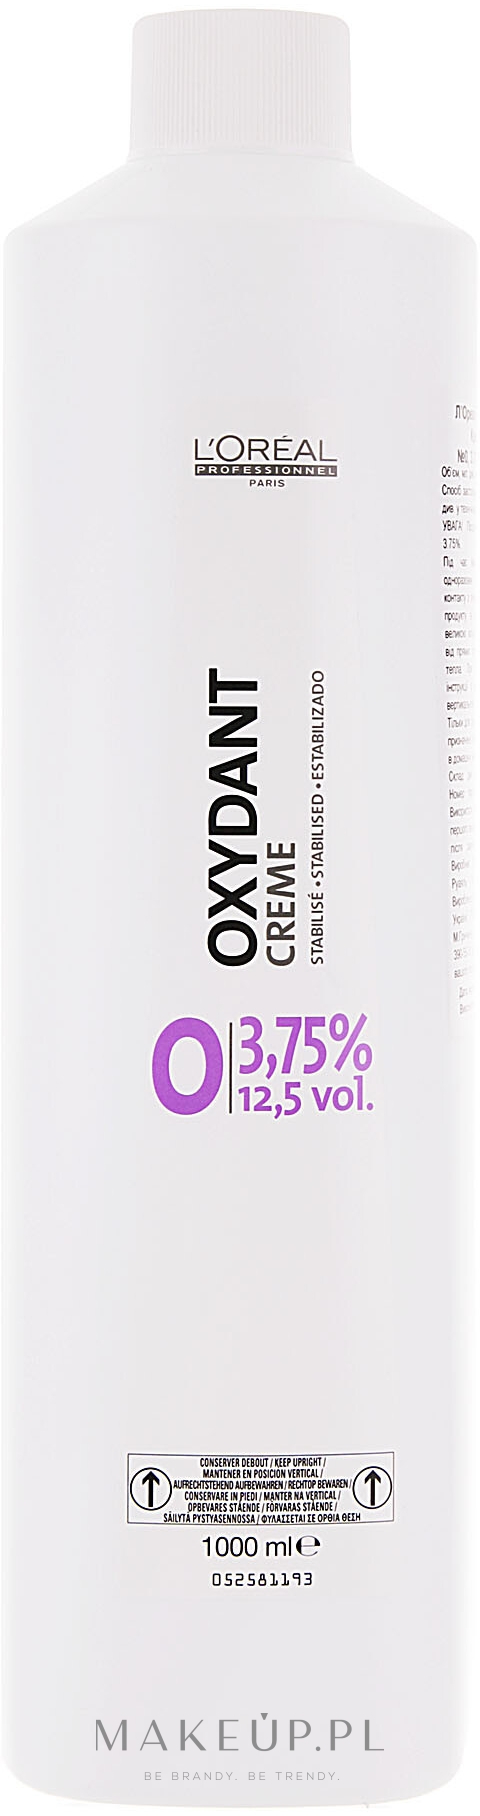 Kremowy oksydant do włosów 3,75% - L'Oreal Professionnel Oxydant Creme 12,5 Vol. — Zdjęcie 1000 ml